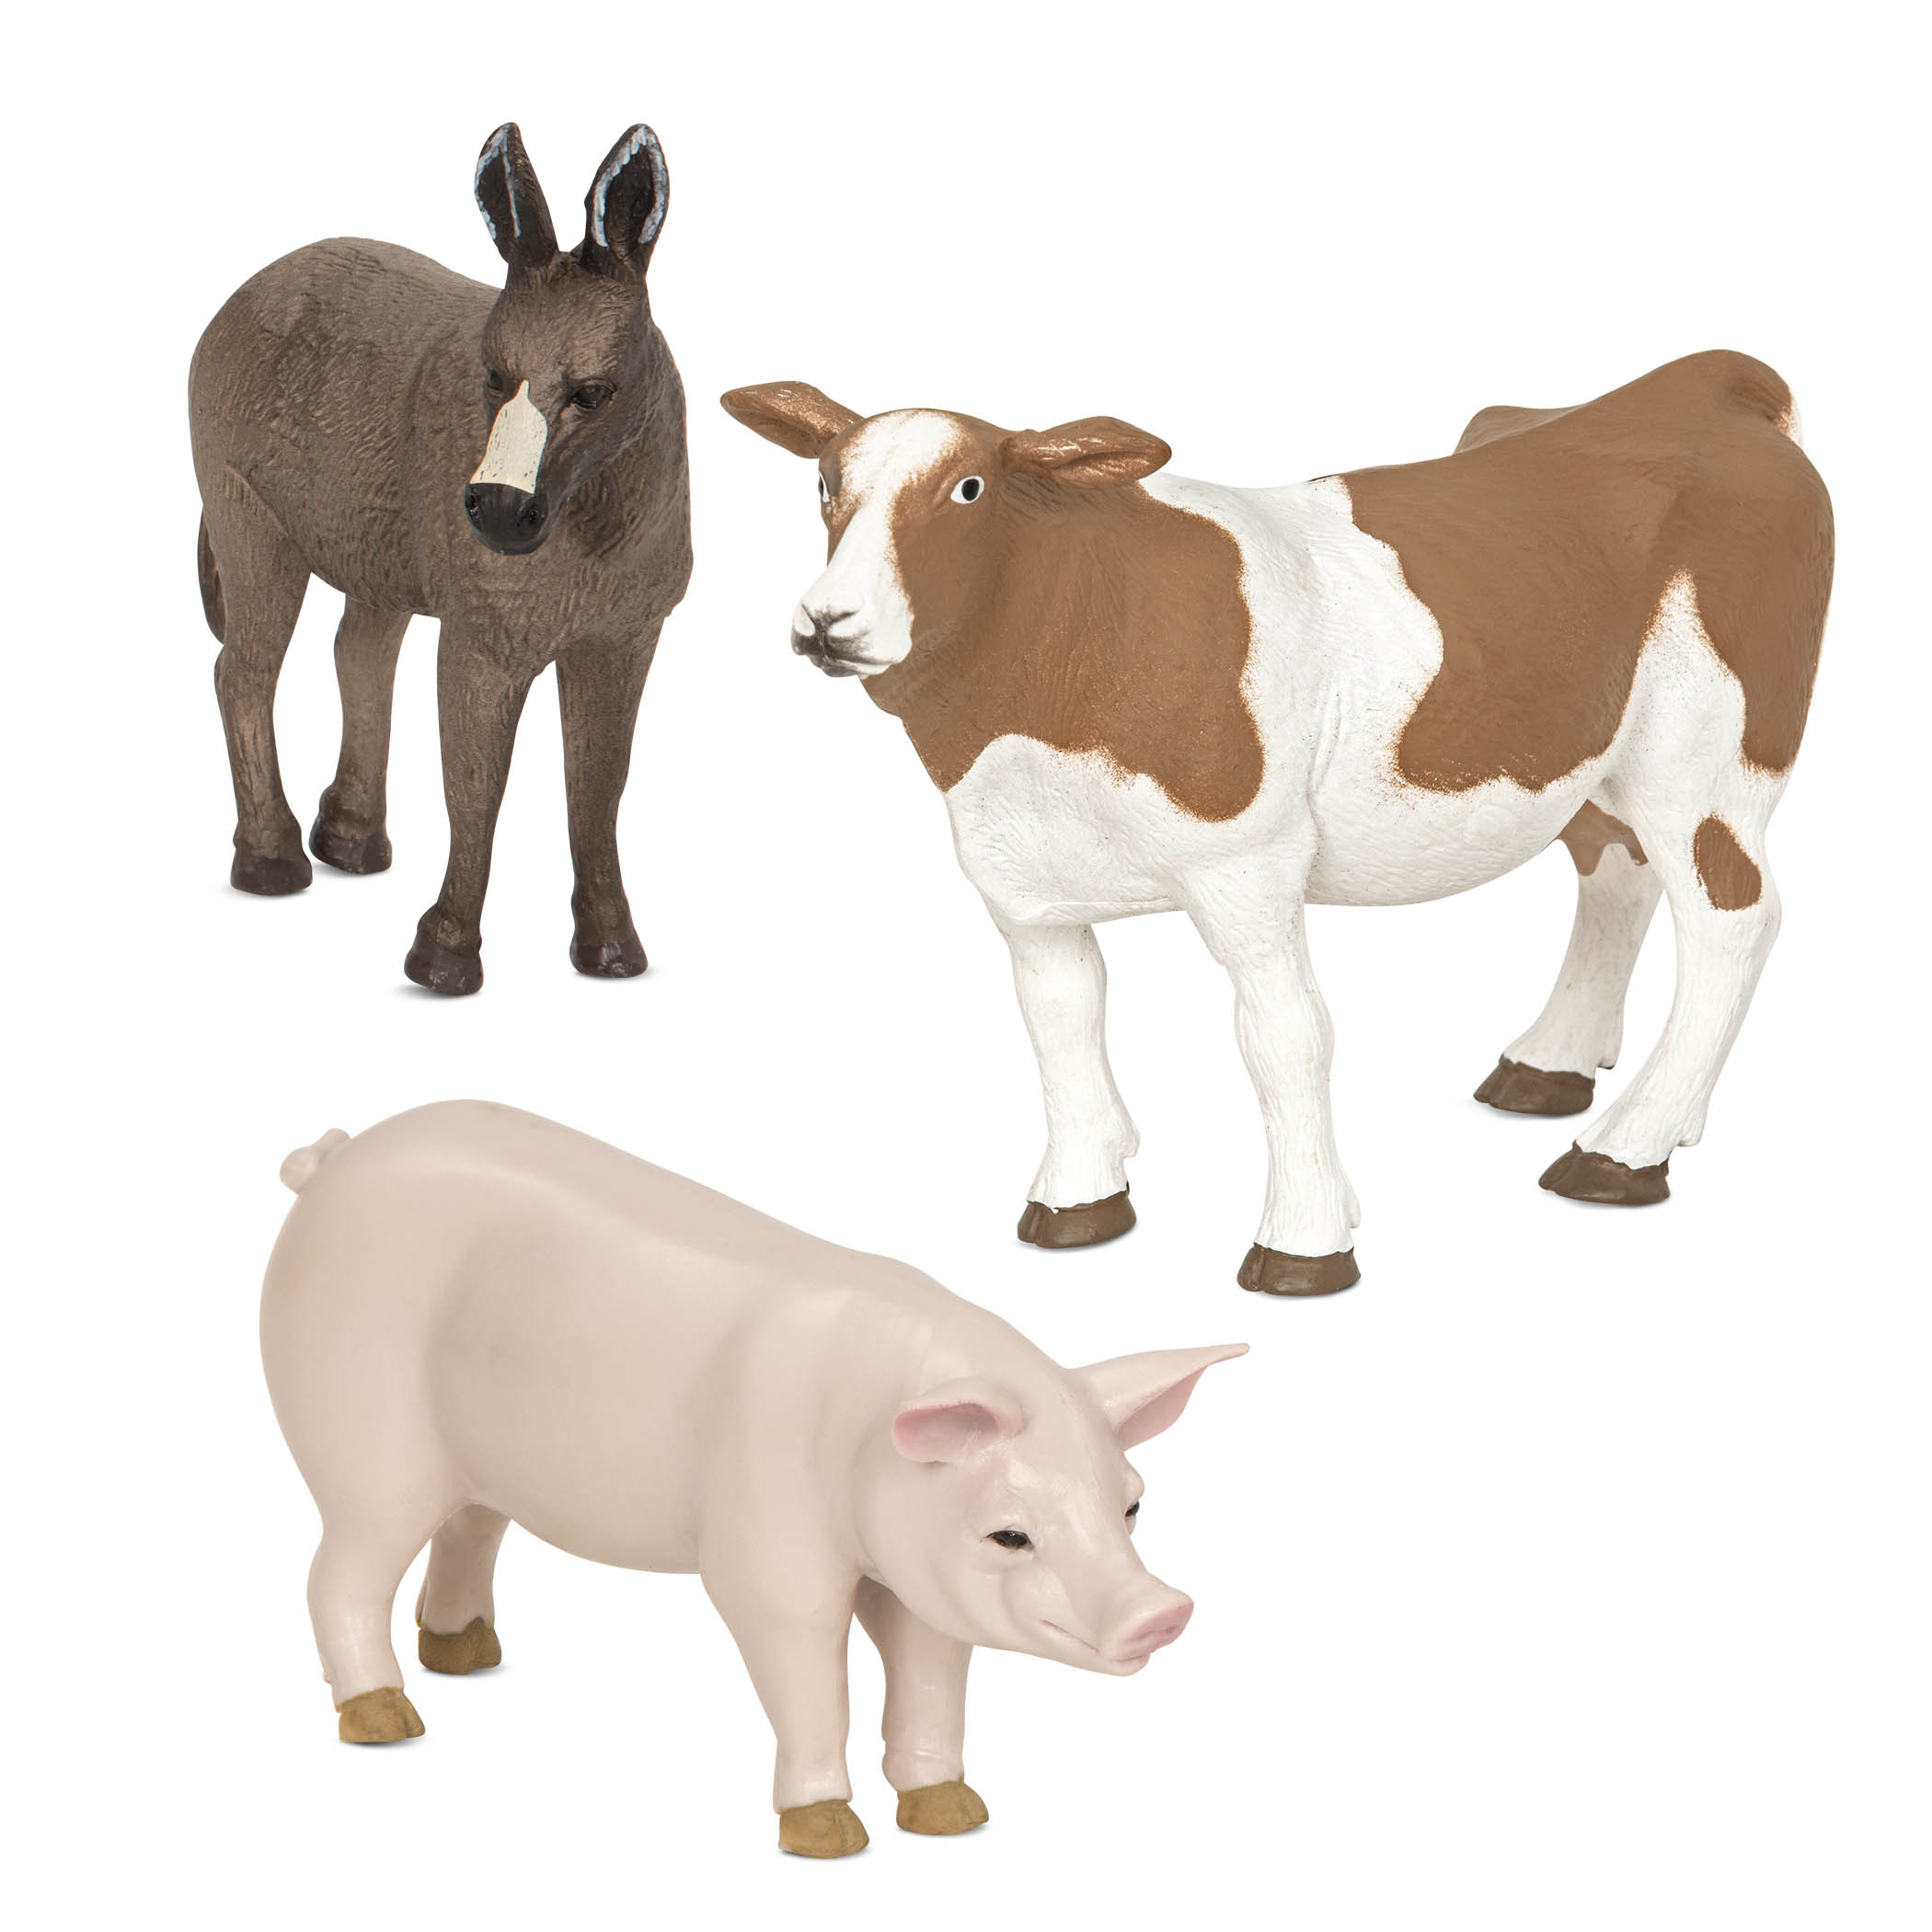 Bauernhof-Tiere Terra  Schwein, Esel, Kuh